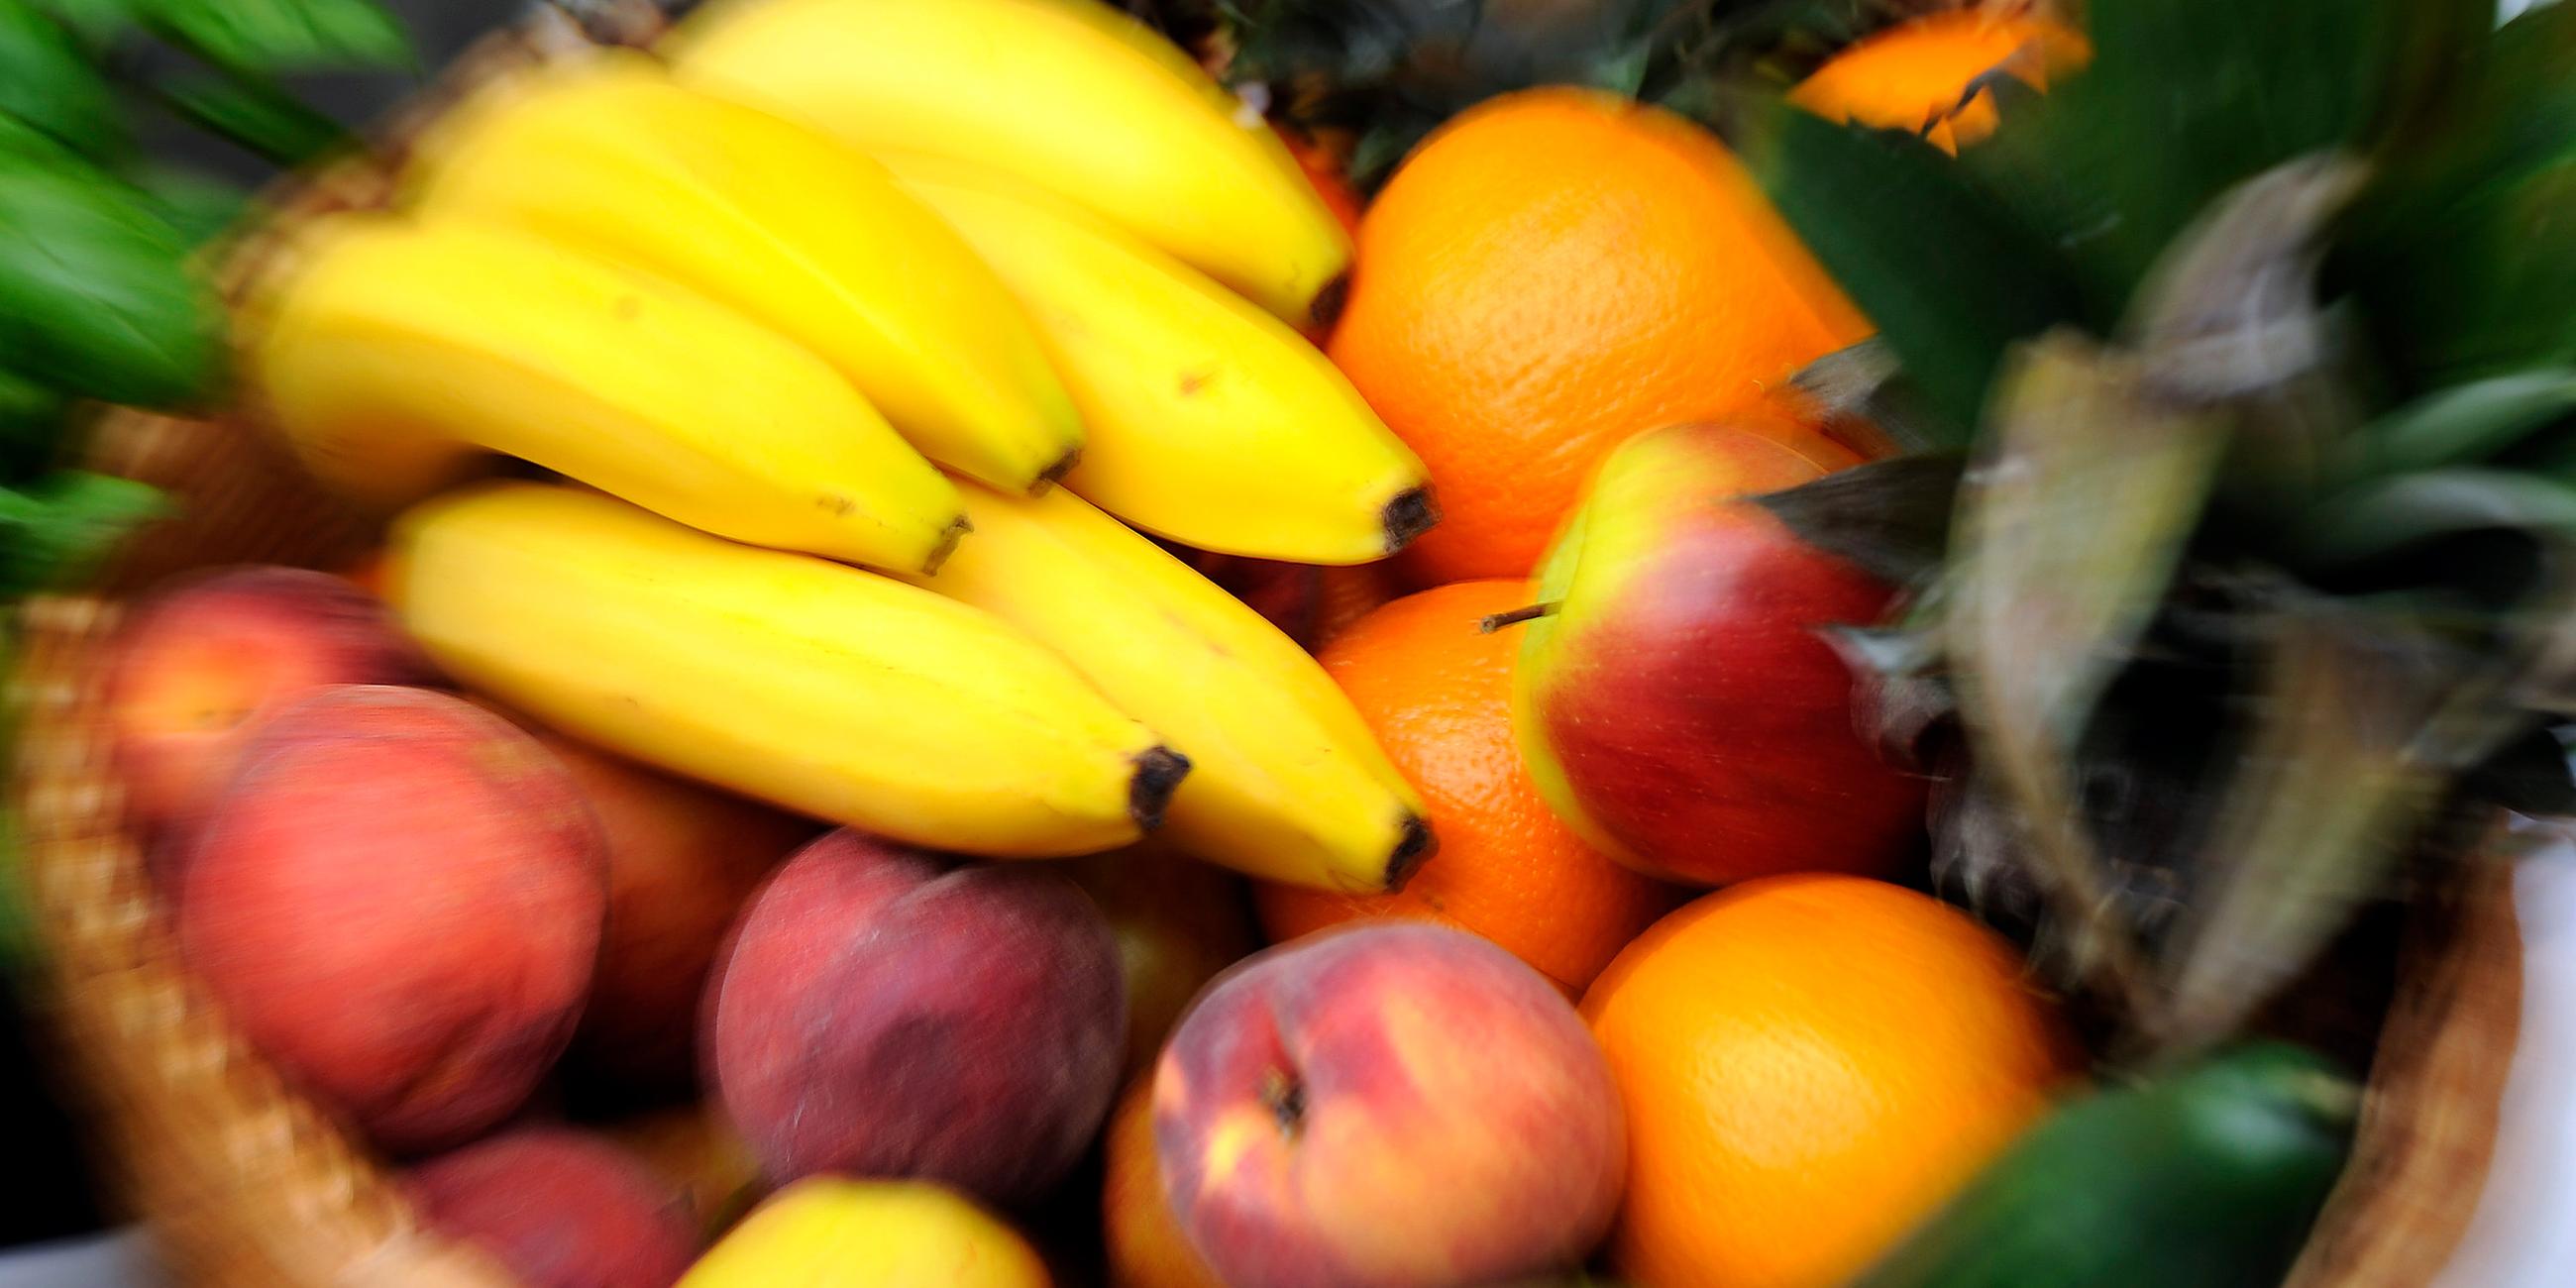 Ein Obstkorb mit Bananen, Äpfeln, Gurken, Orangen und Ananas, aufgenommen am 10.08.2013 beim «Vegan Street Day» in Dortmund (Nordrhein-Westfalen)